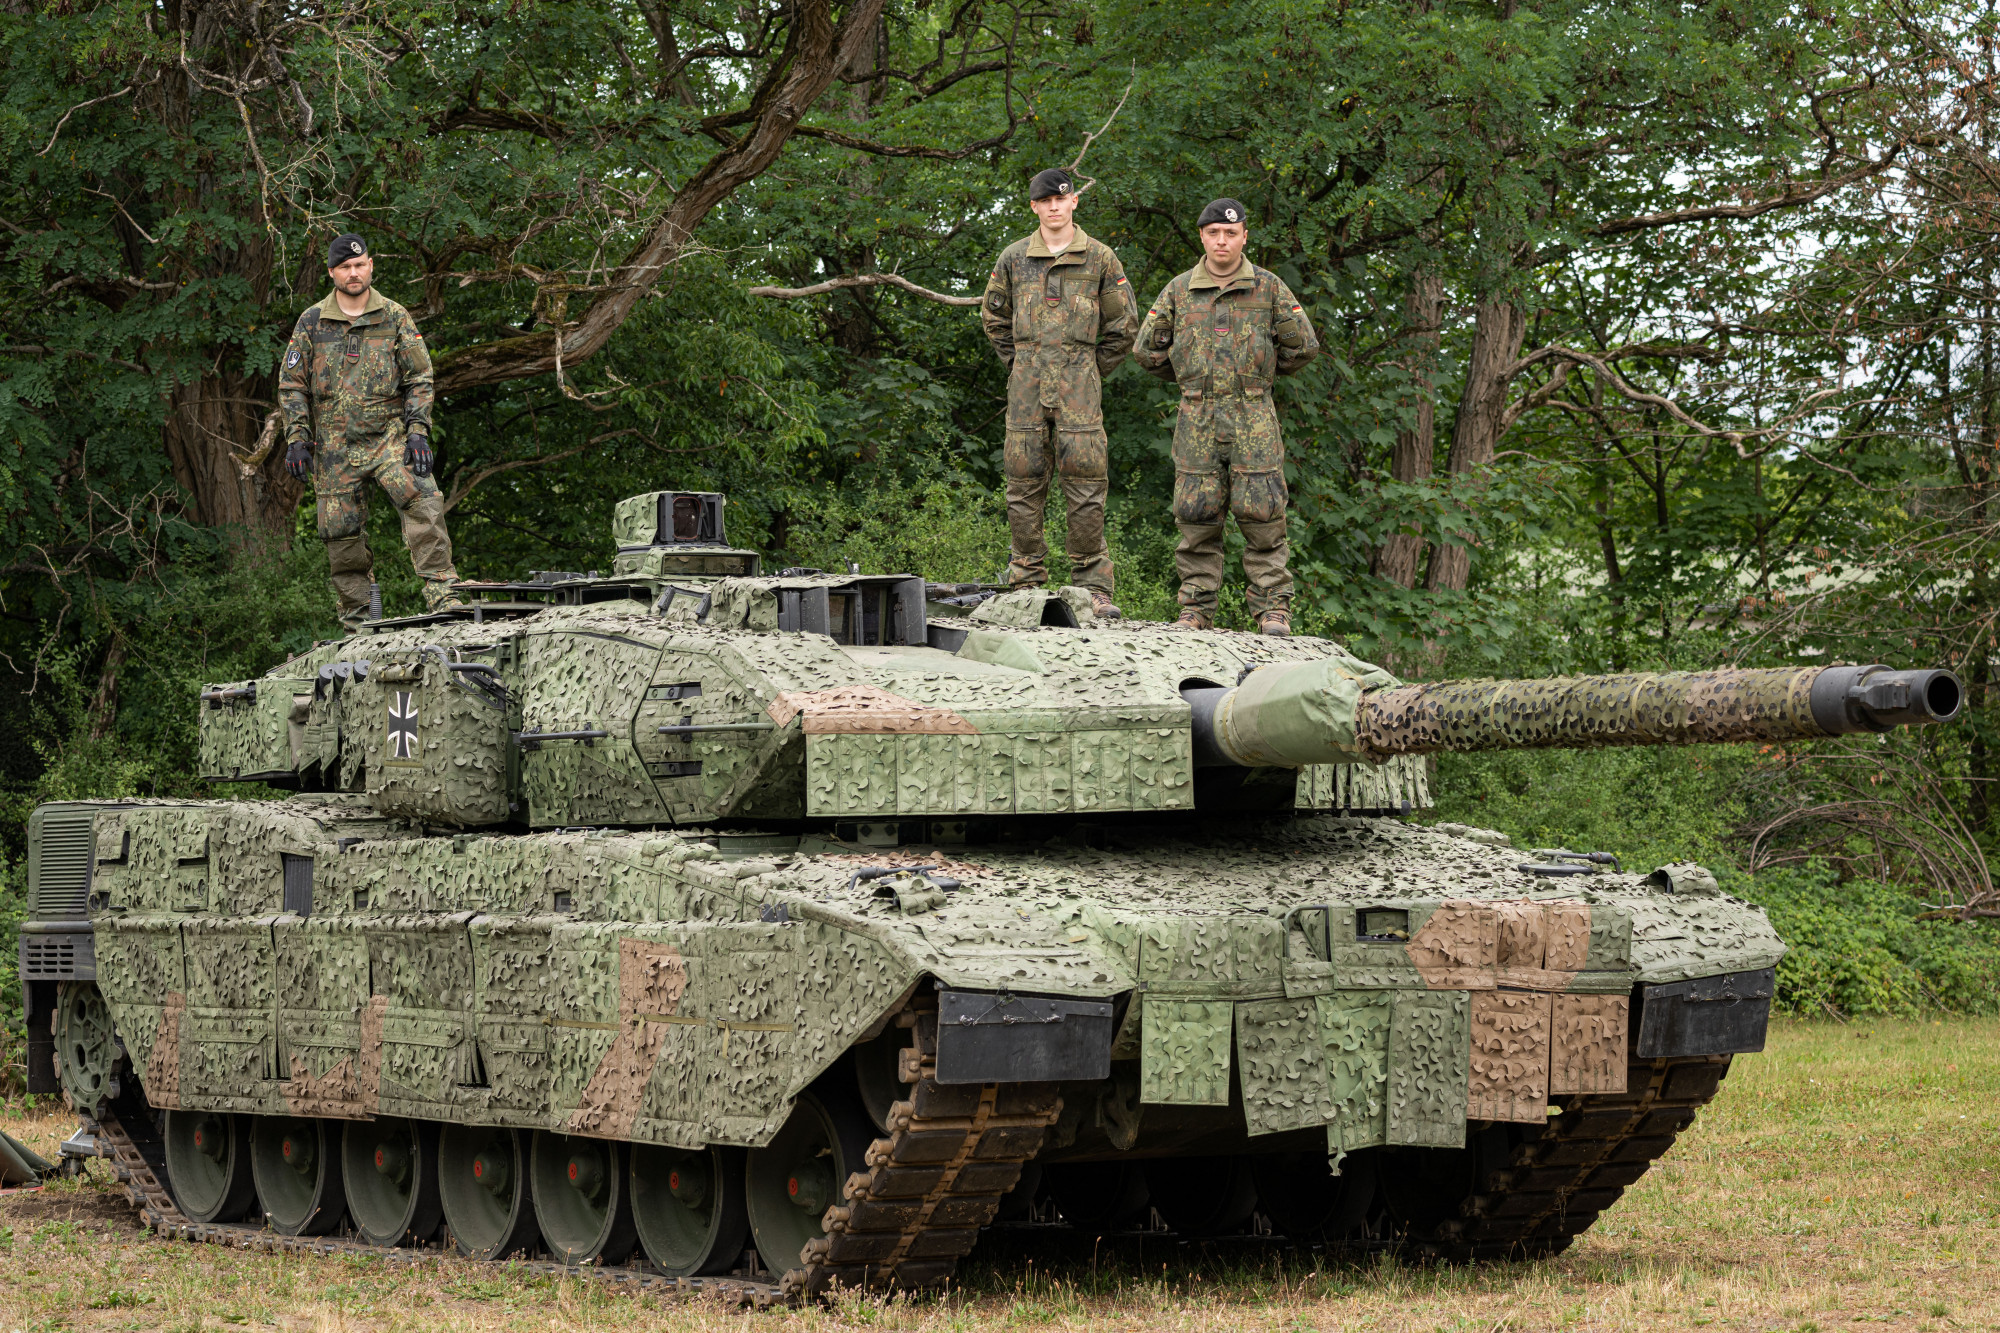 Legkorábban csak jövőre tudnának a németek Leopard tankokat küldeni Ukrajnának